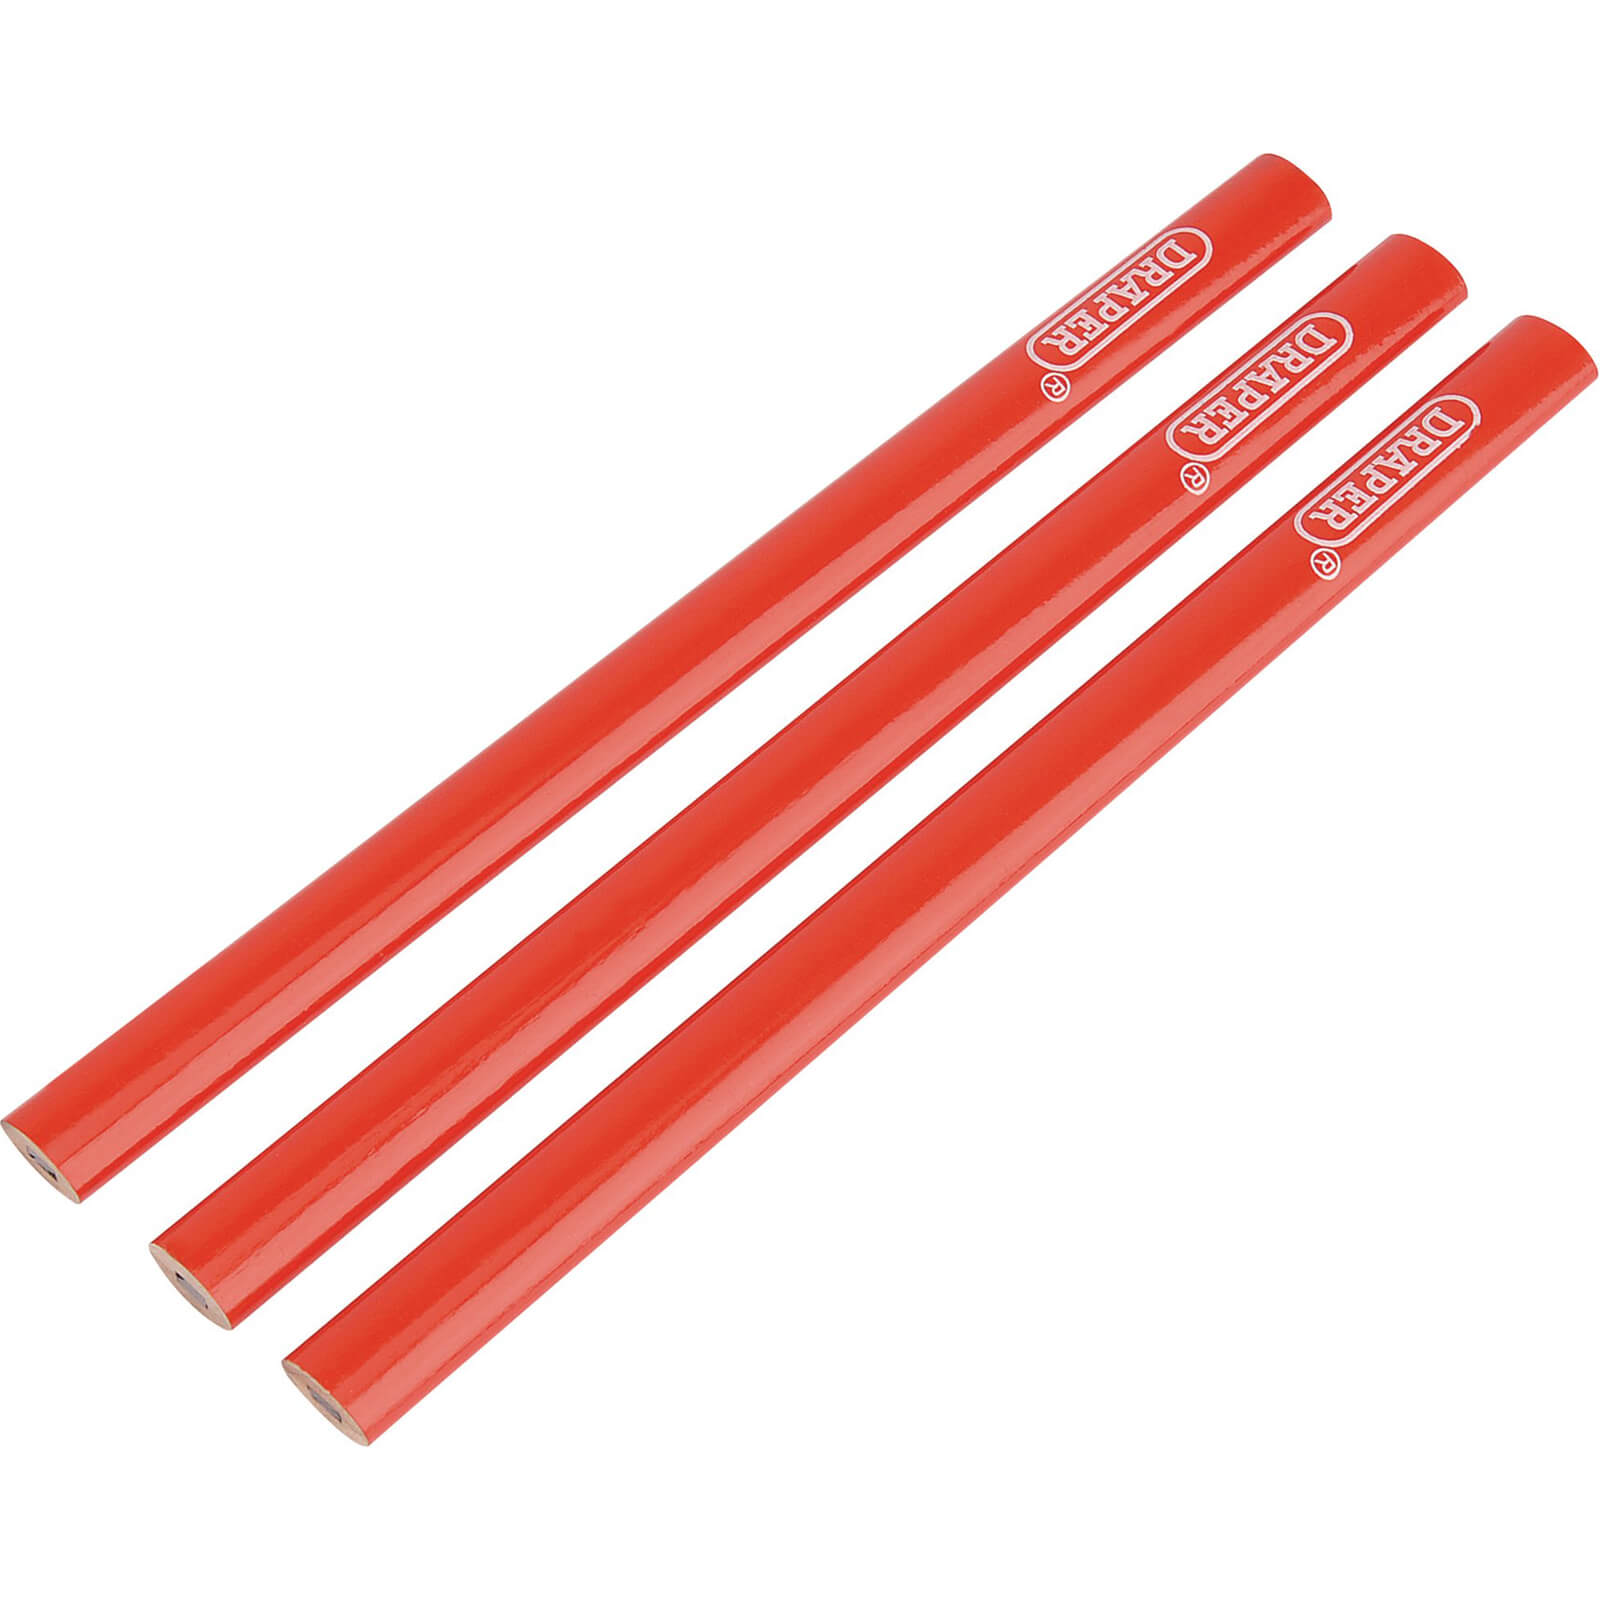 Image of Draper Carpenters Pencils Pack of 3